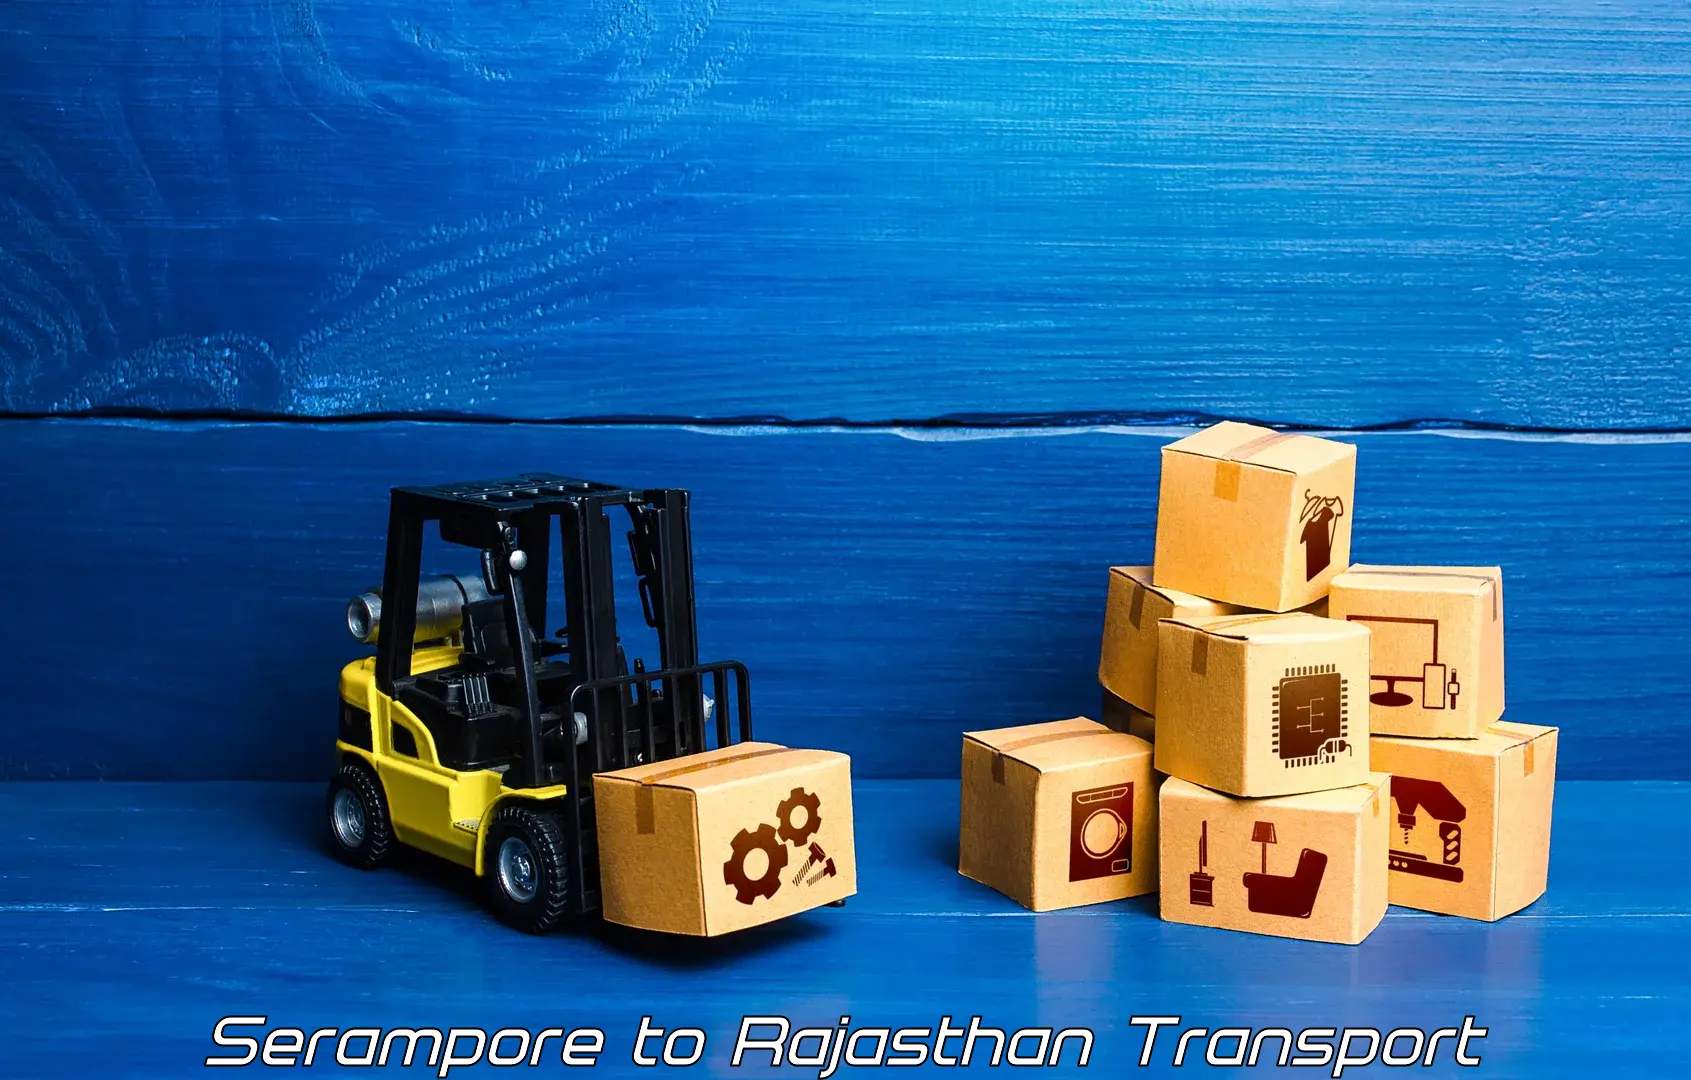 Furniture transport service Serampore to Fatehpur Sikar